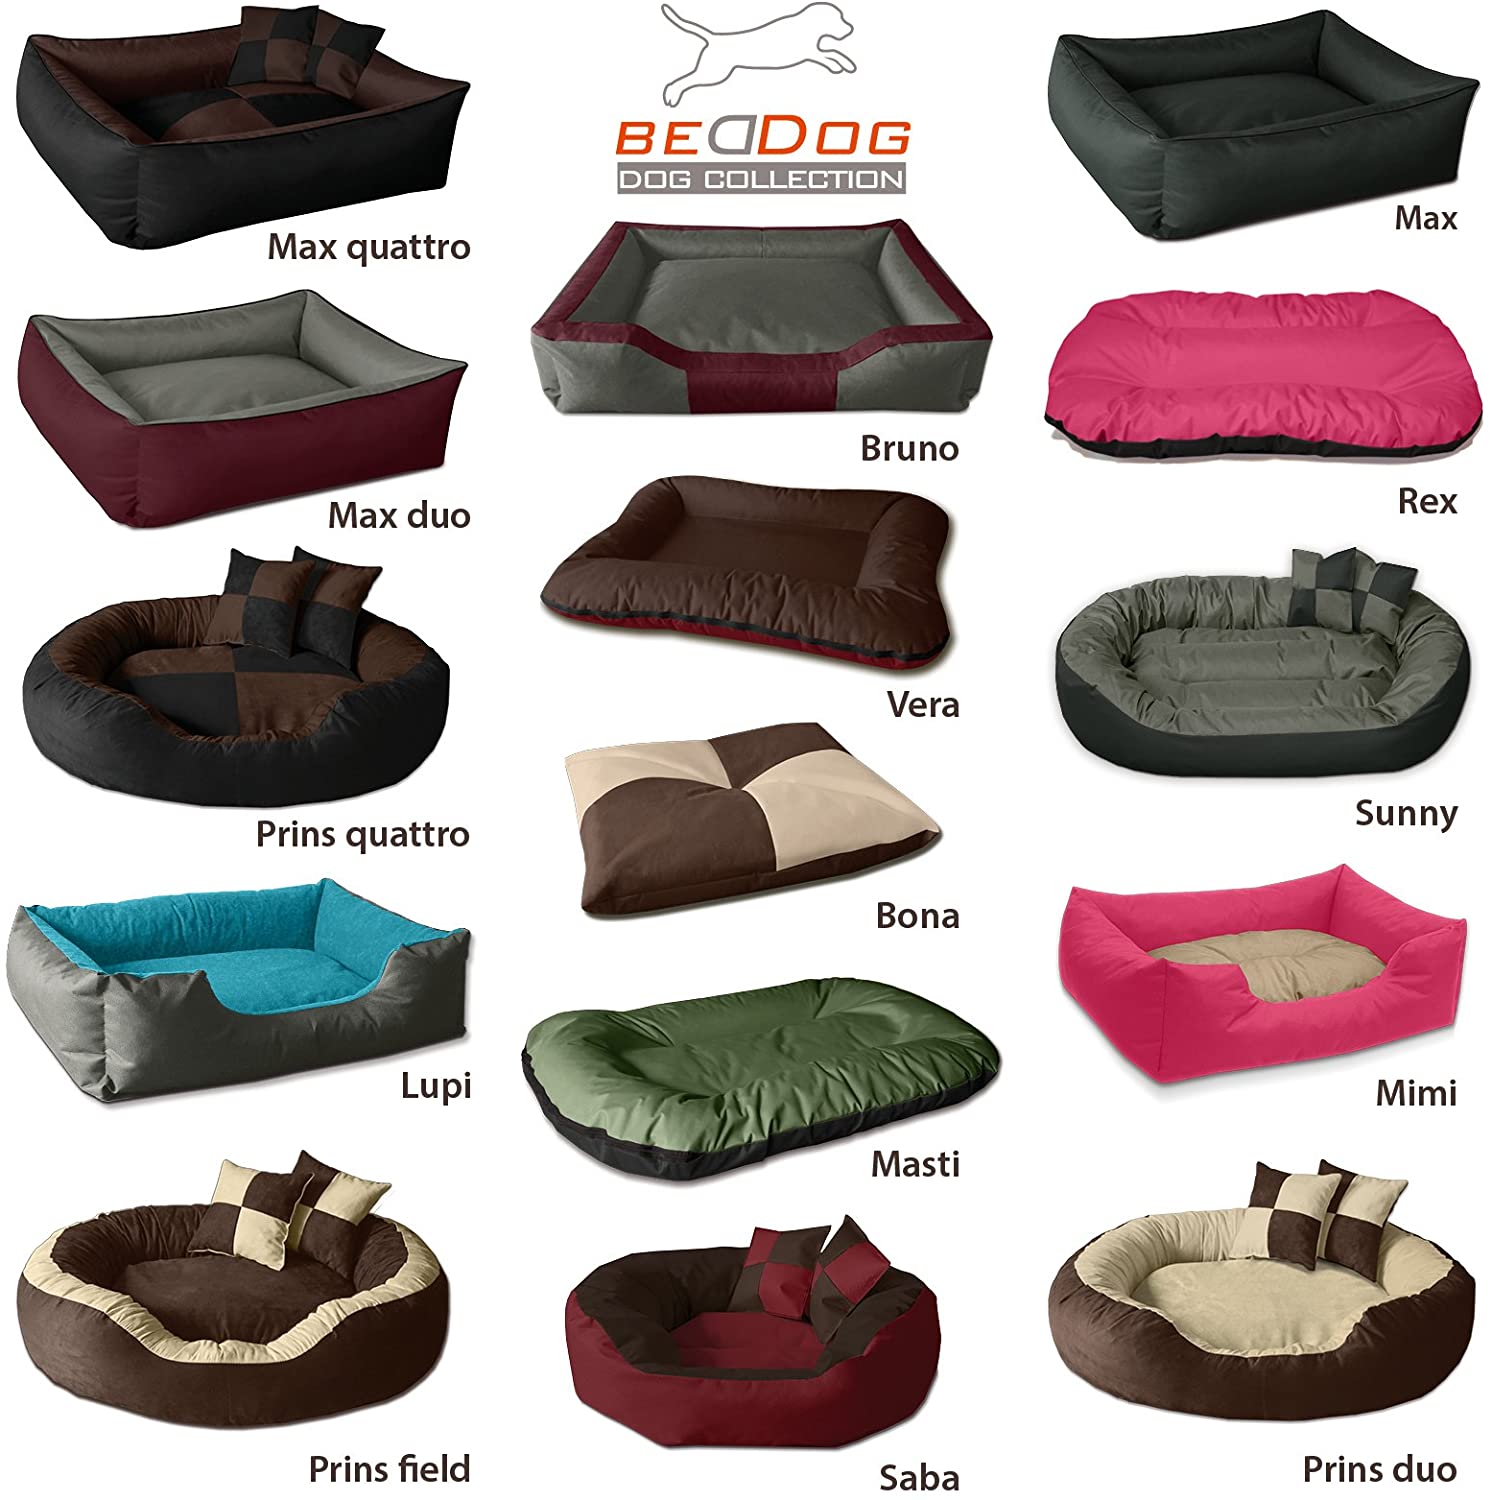  BedDog® 2 en 1 Vera Cereza/Gris XXL Aprox. 120x90cm colchón para Perro, 7 Colores, Cama, sofá, Cesta para Perro 